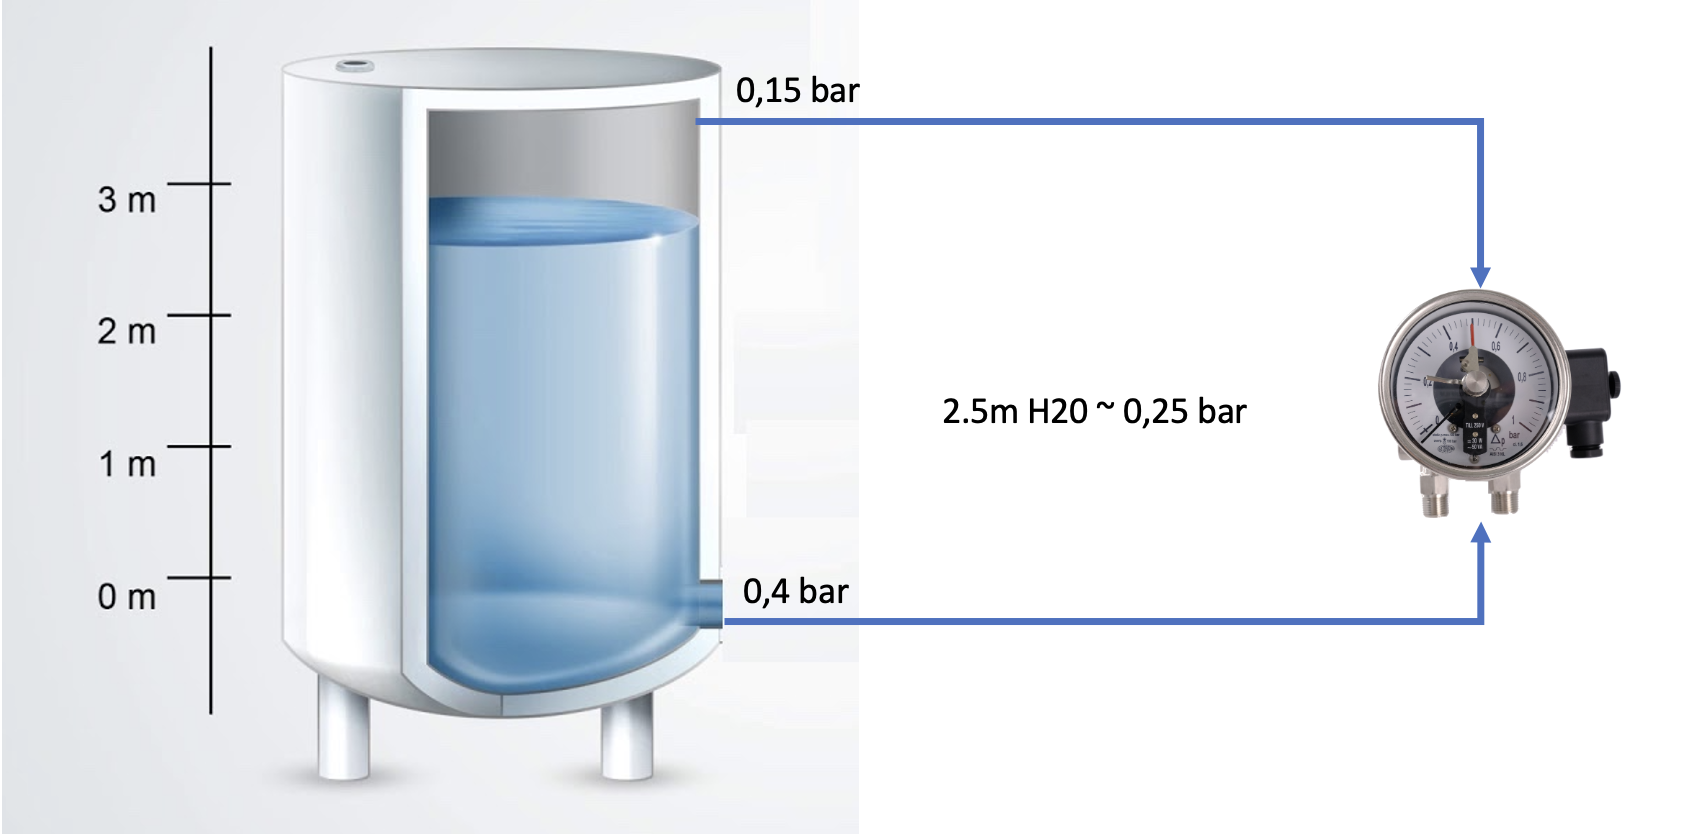 Đồng hồ chênh áp M7000 được dùng để đo mức khí LPG trong bồn chứa